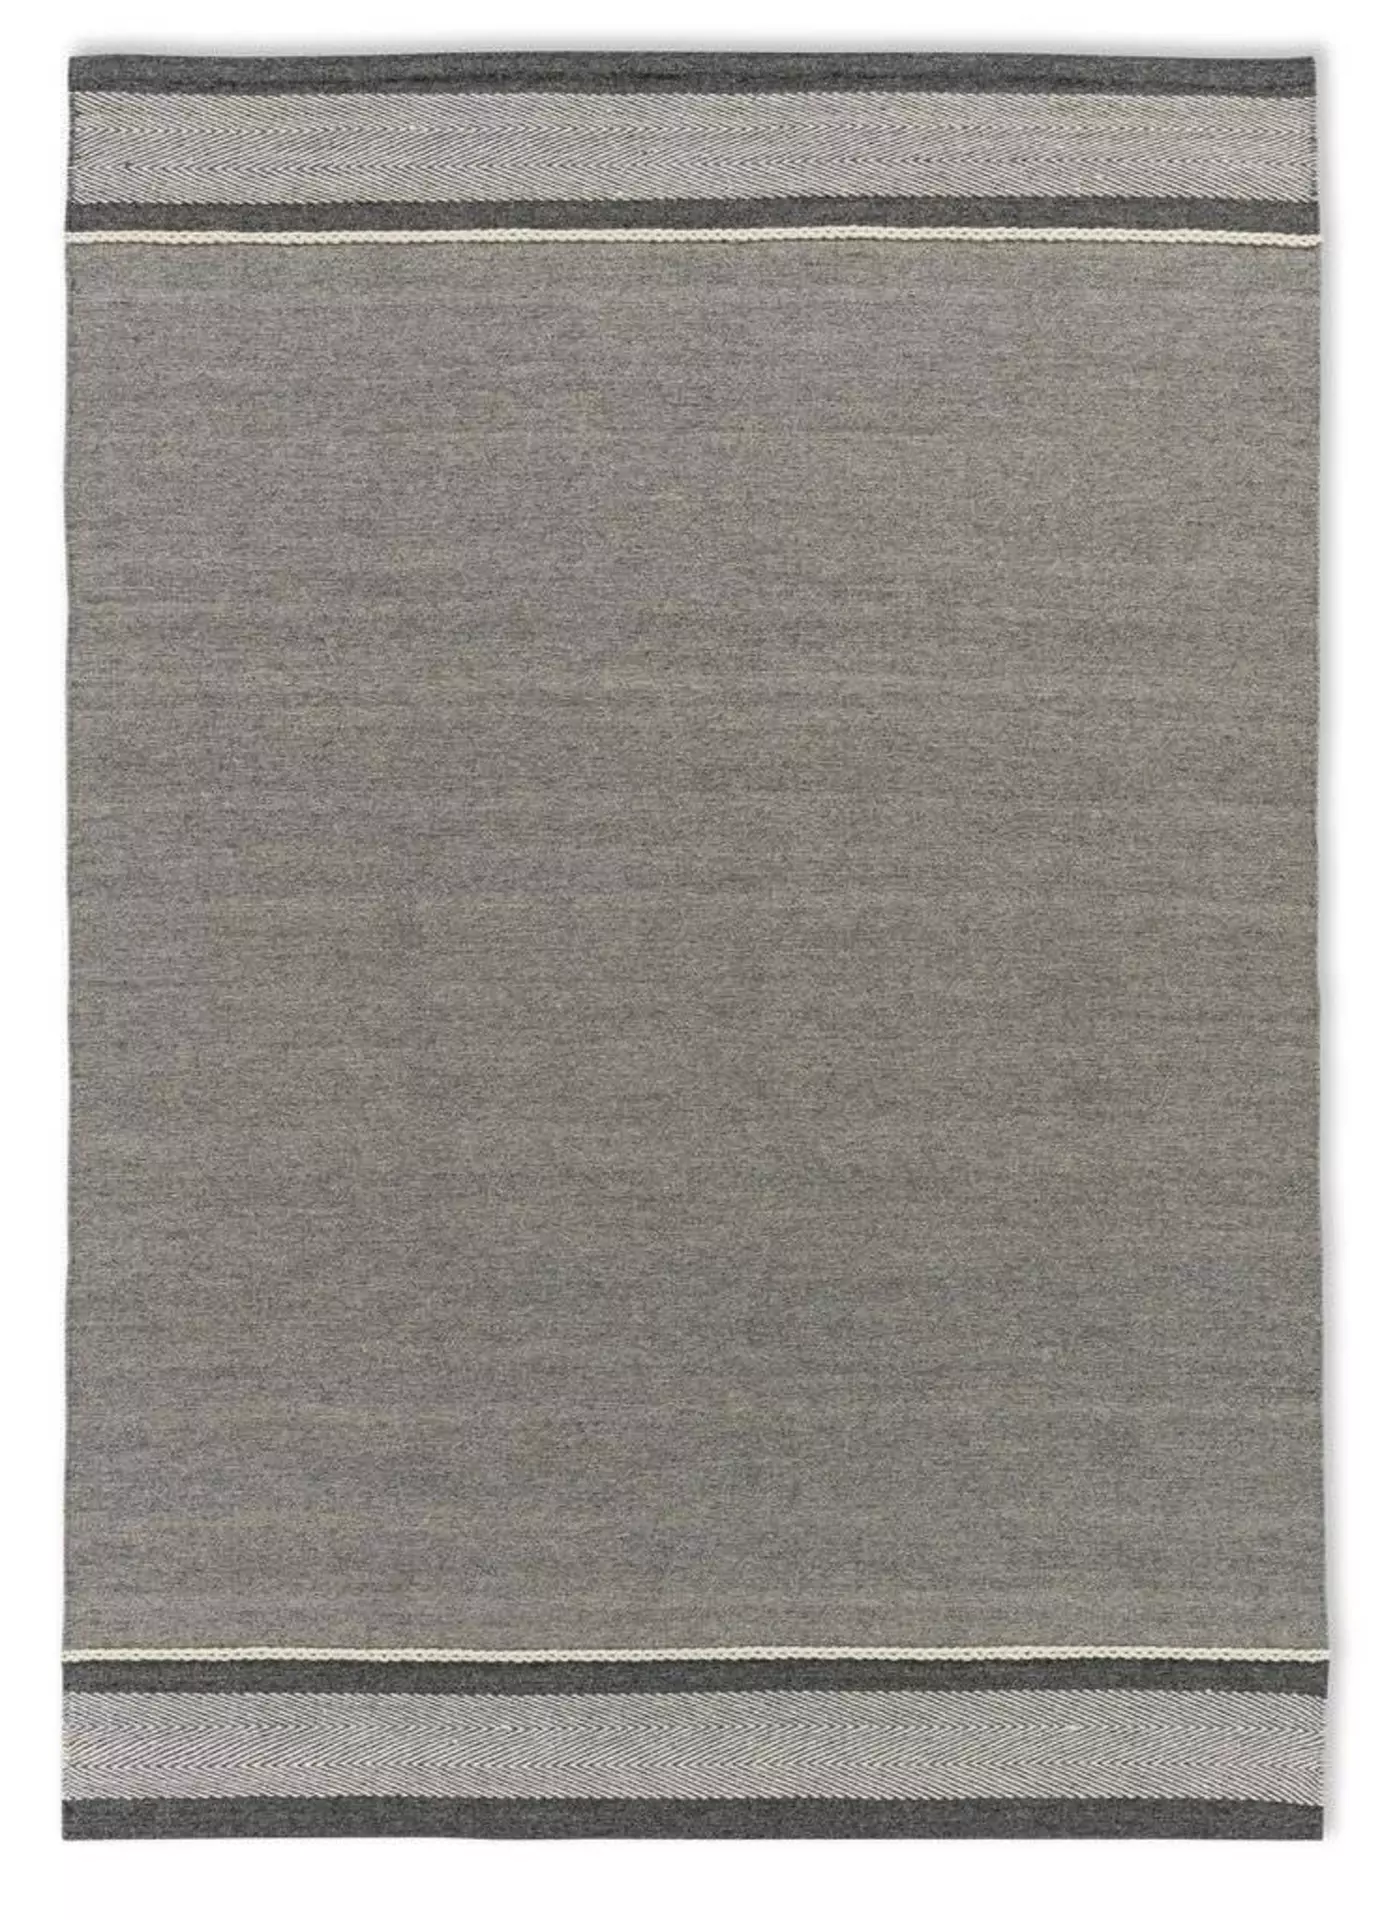 Handwebteppich Botana SCHÖNER WOHNEN-Kollektion Textil 140 x 200 cm